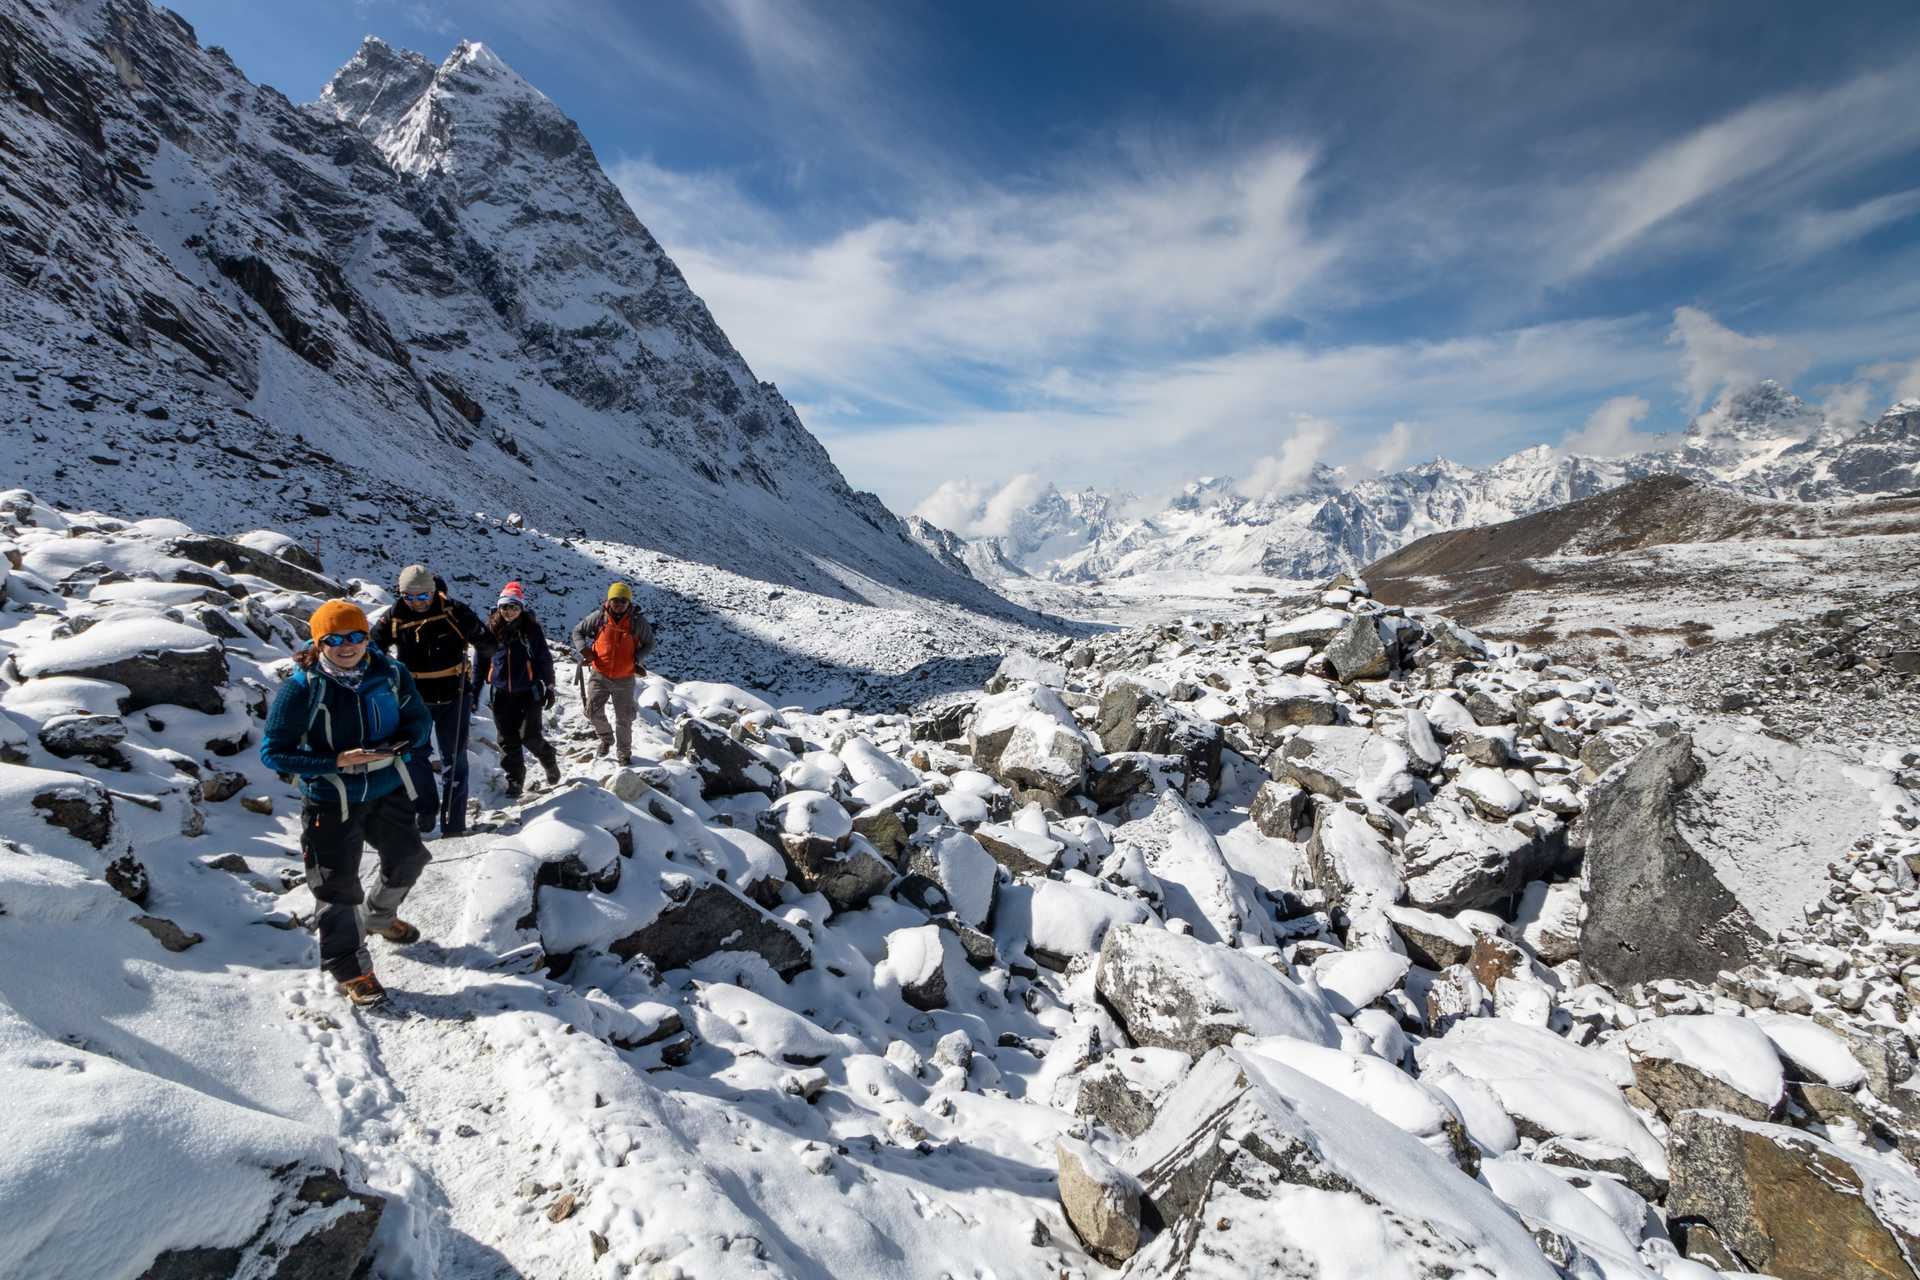 trekking-on-snowy-mountain-path